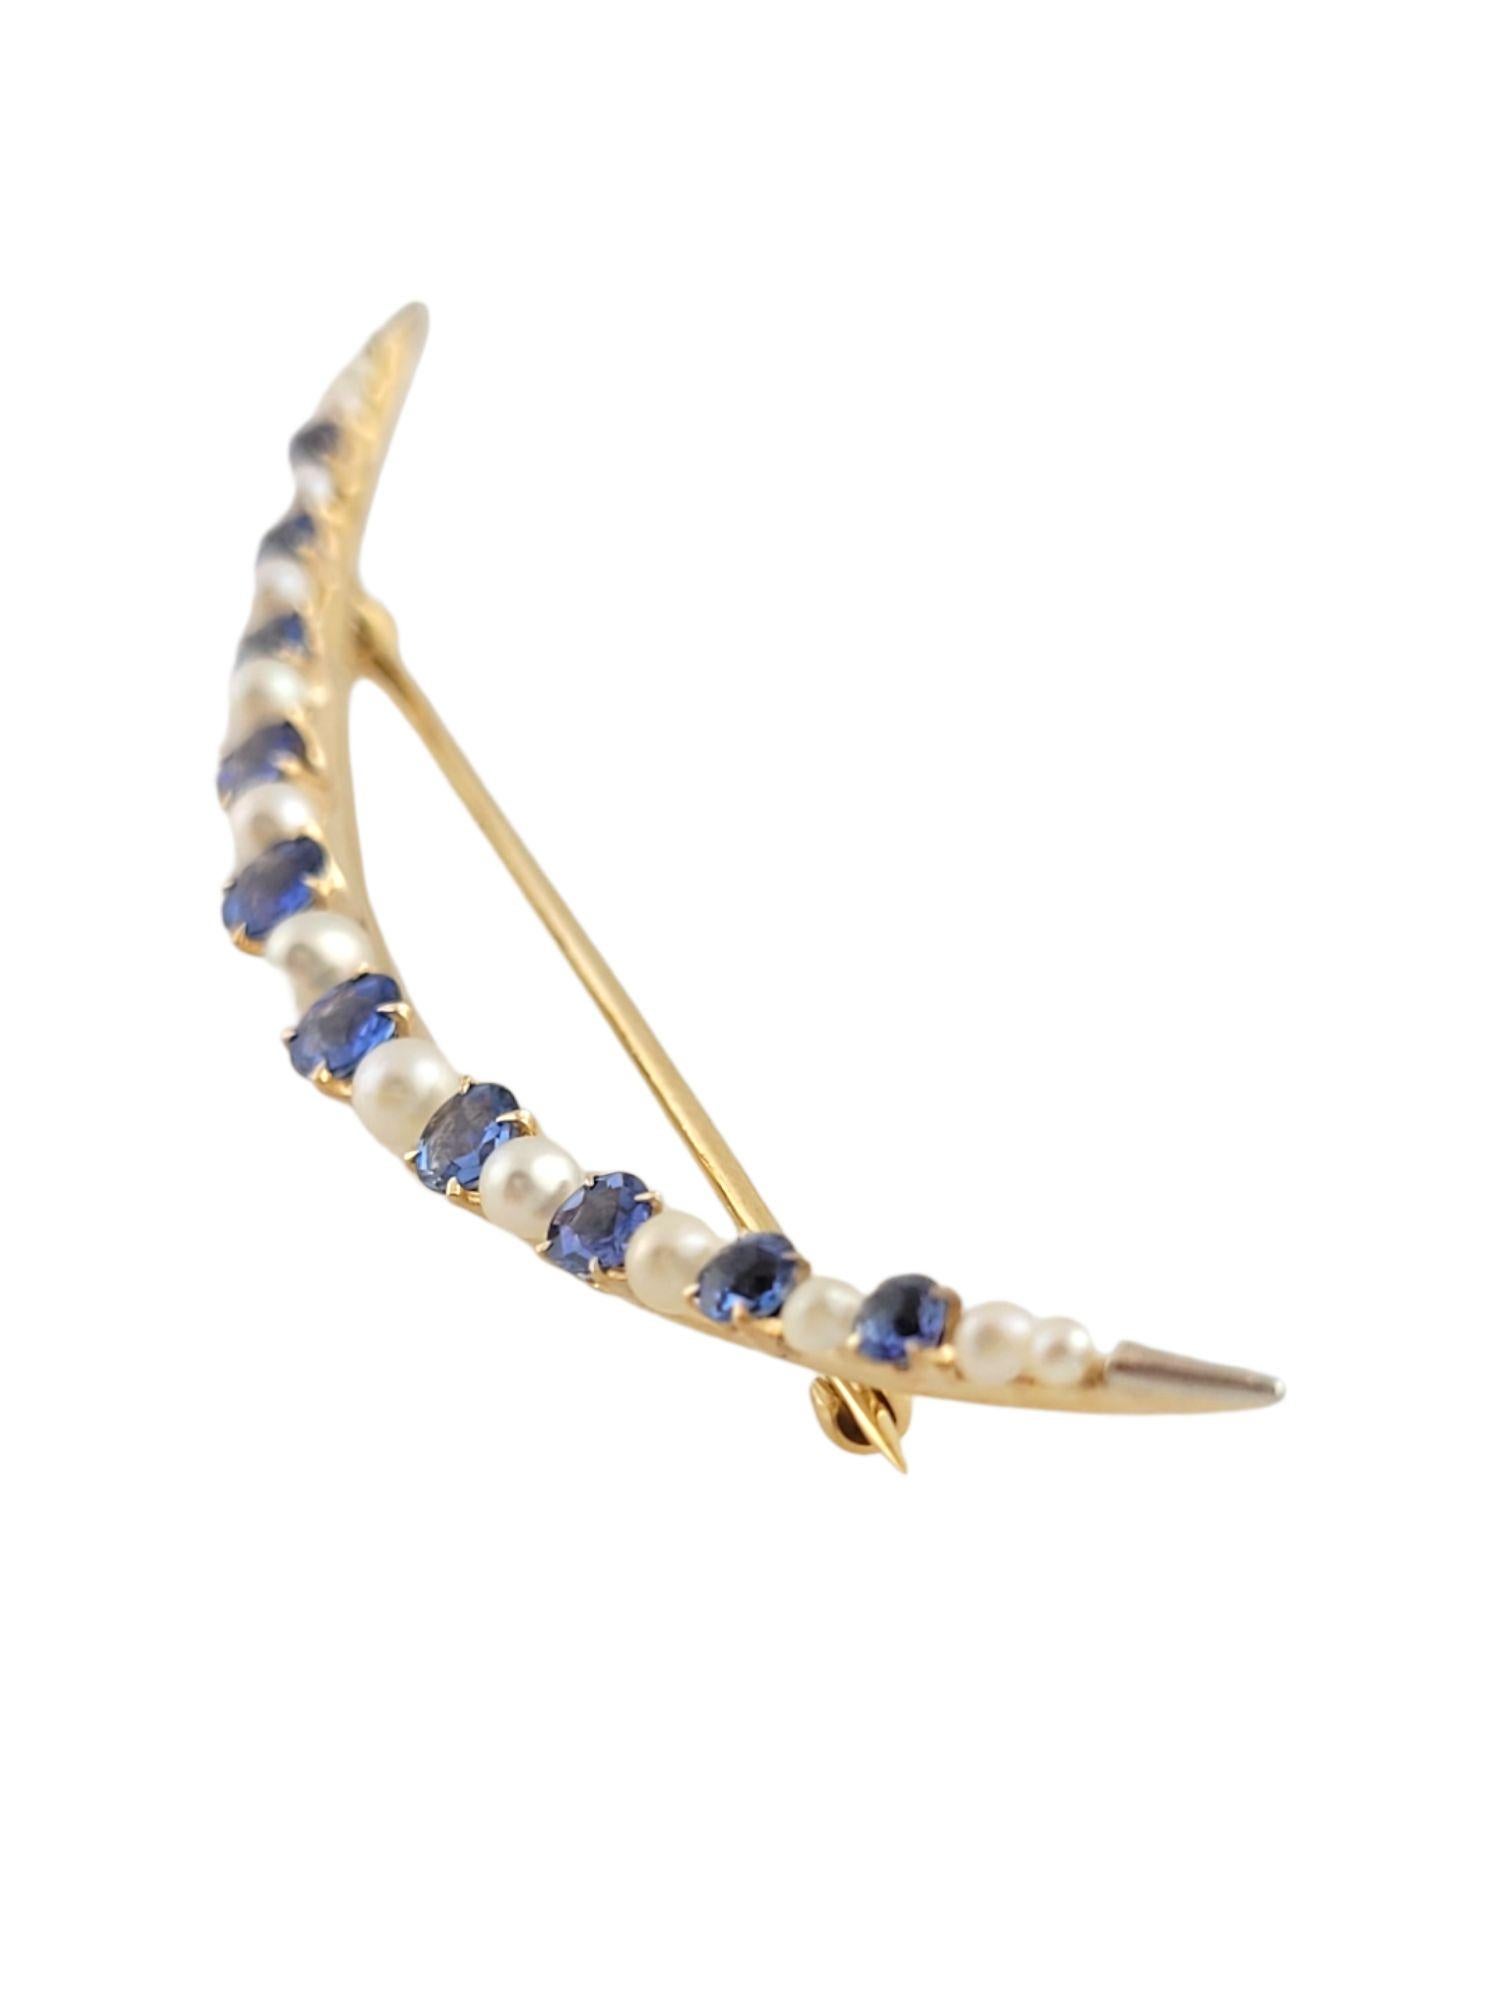 Magnifique broche en or 14K en forme de croissant de lune avec 10 saphirs bleus et 13 perles !

Perles : 1,9-3,2 mm

2,08cts en saphirs bleus naturels. Oeil propre, couleur bleu violet moyennement clair, bonne coupe

Taille : 74,3 mm X 15 mm X 4,9